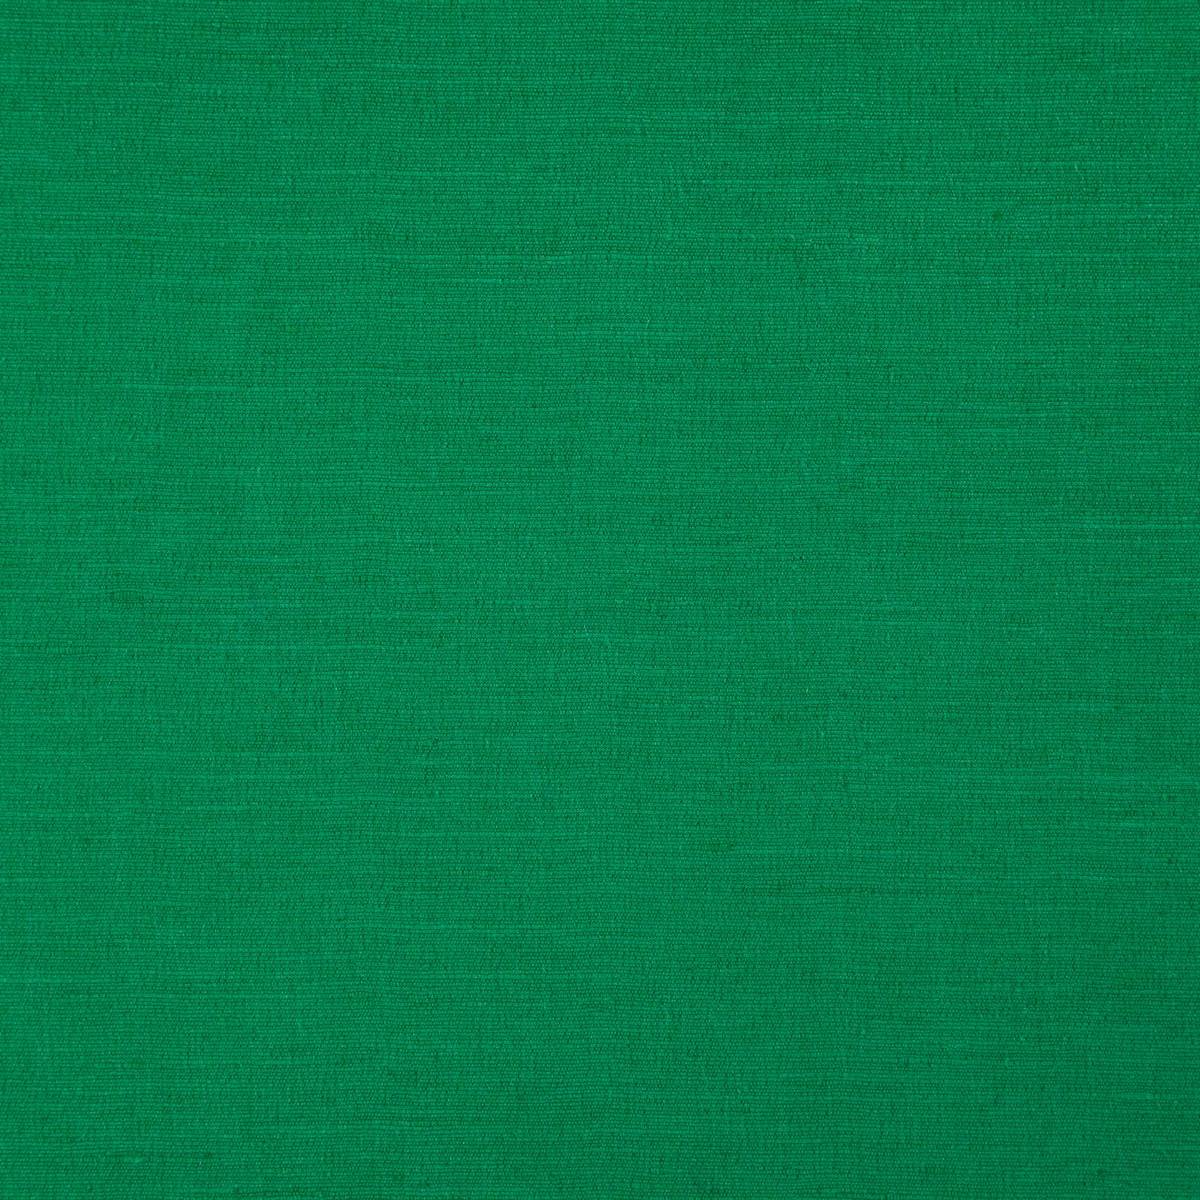 Boston Emerald Fabric by Clarke & Clarke